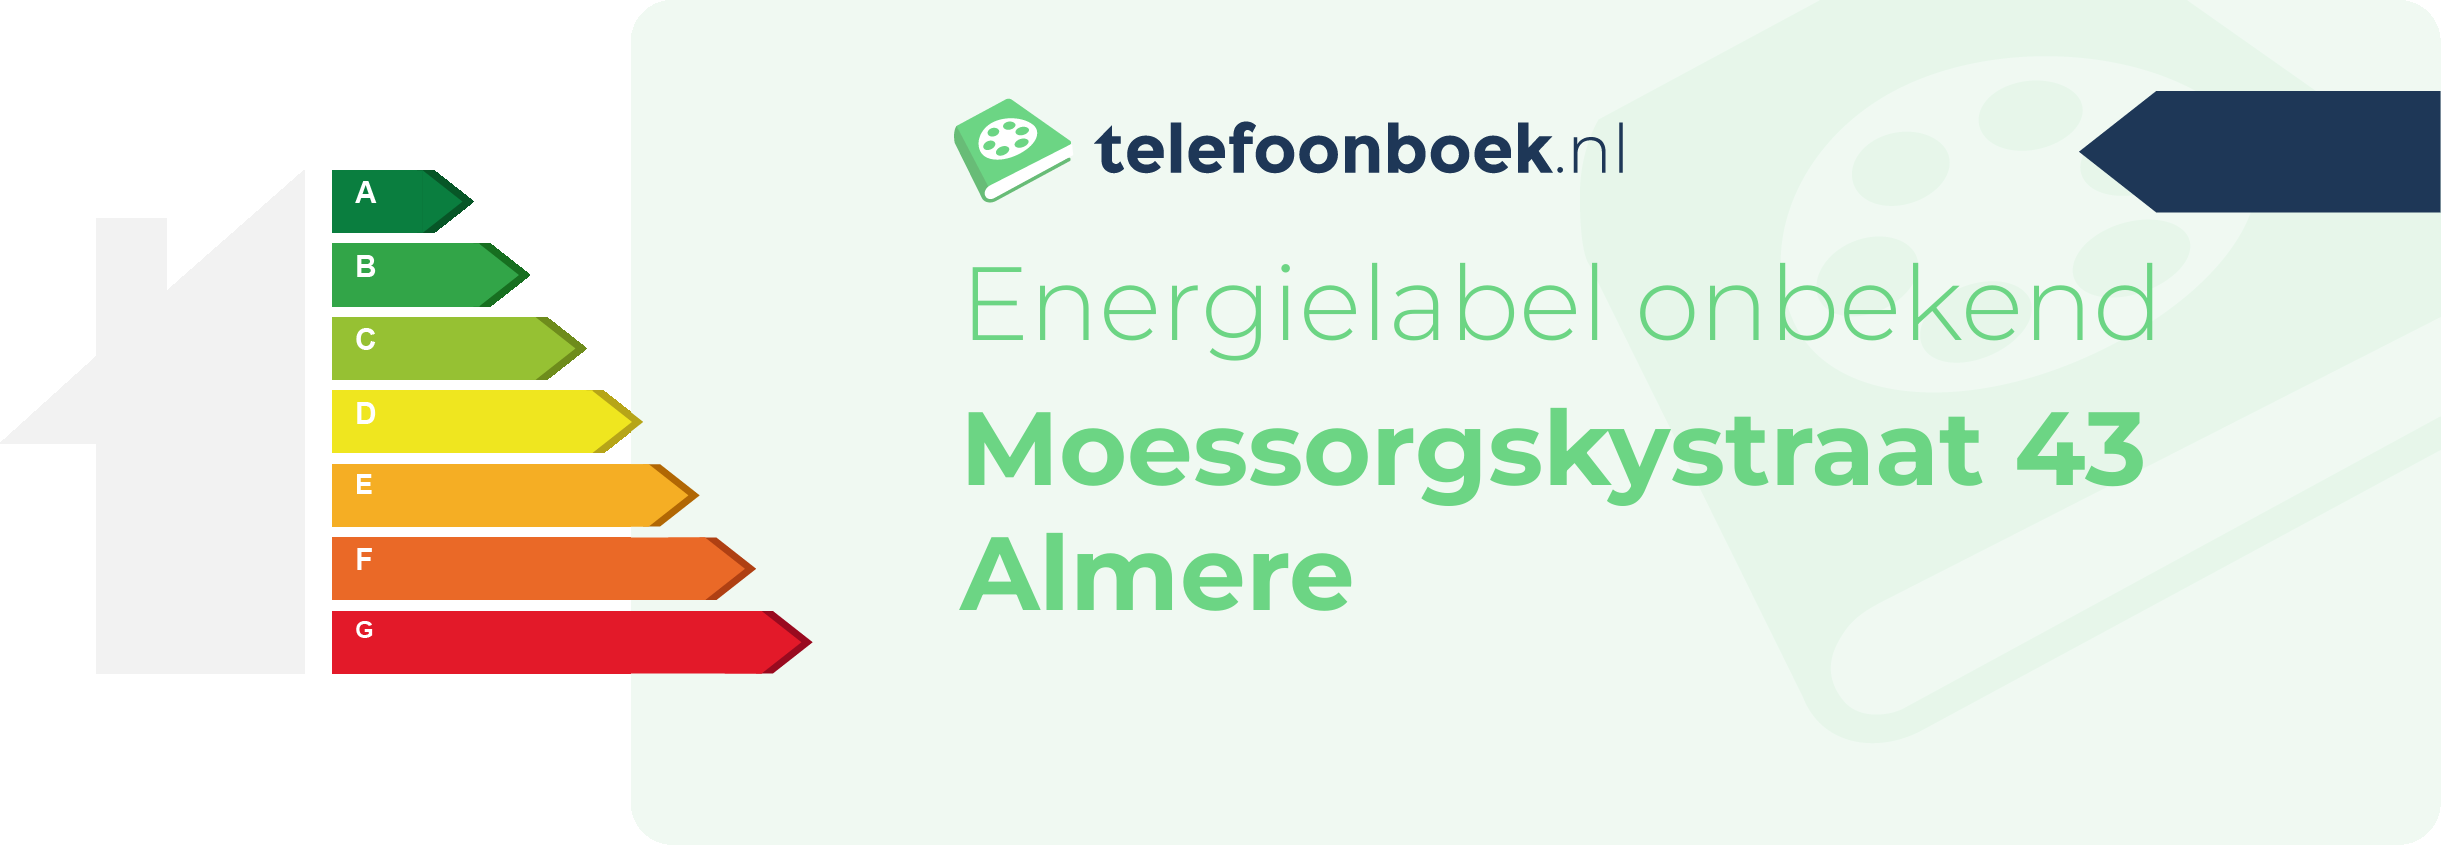 Energielabel Moessorgskystraat 43 Almere